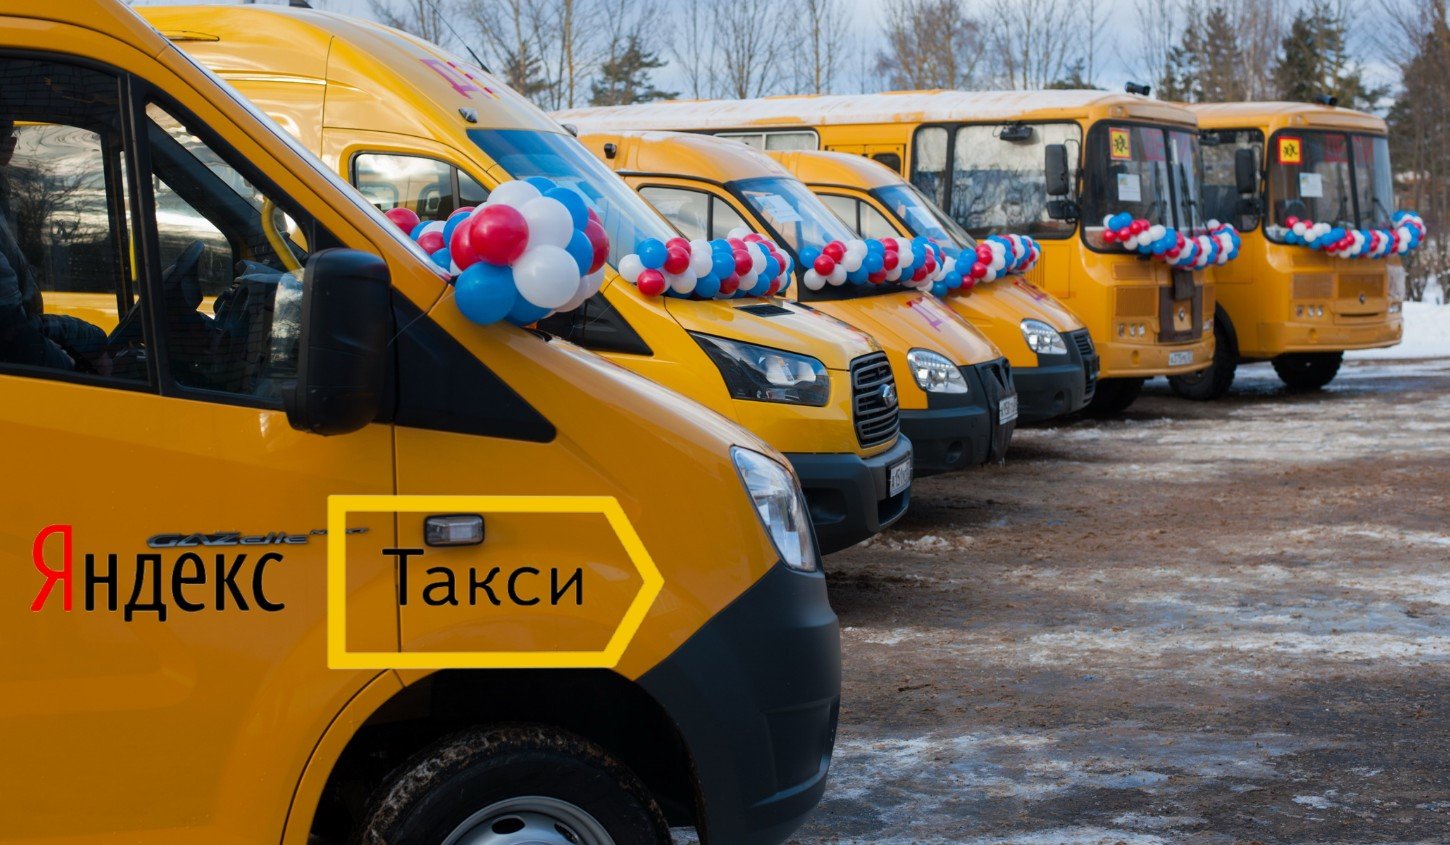 Маршрутное такси 18. Школьные автобусы в России. Общественный транспорт такси.